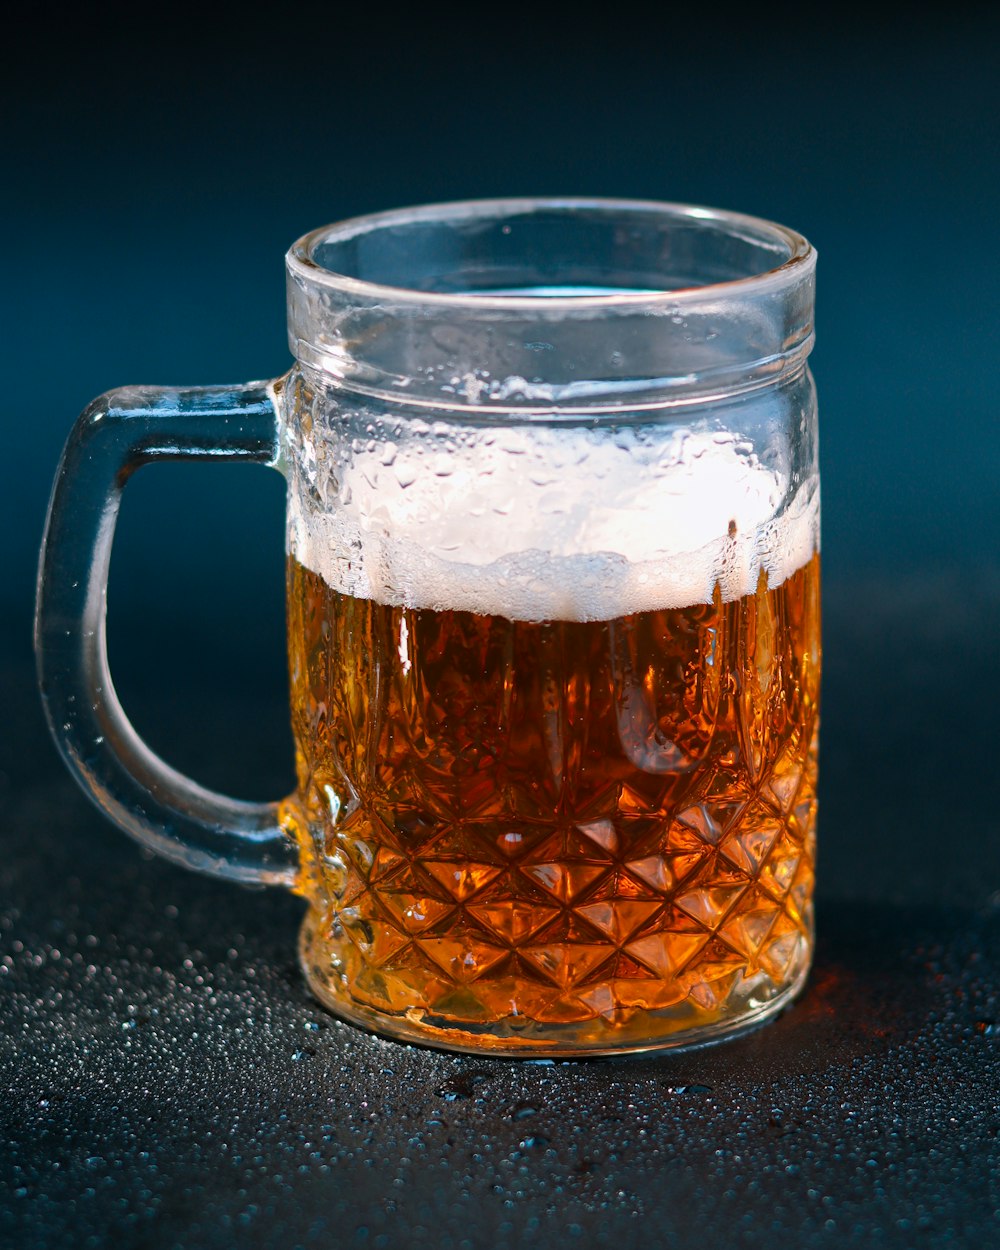 a glass mug of beer on a table